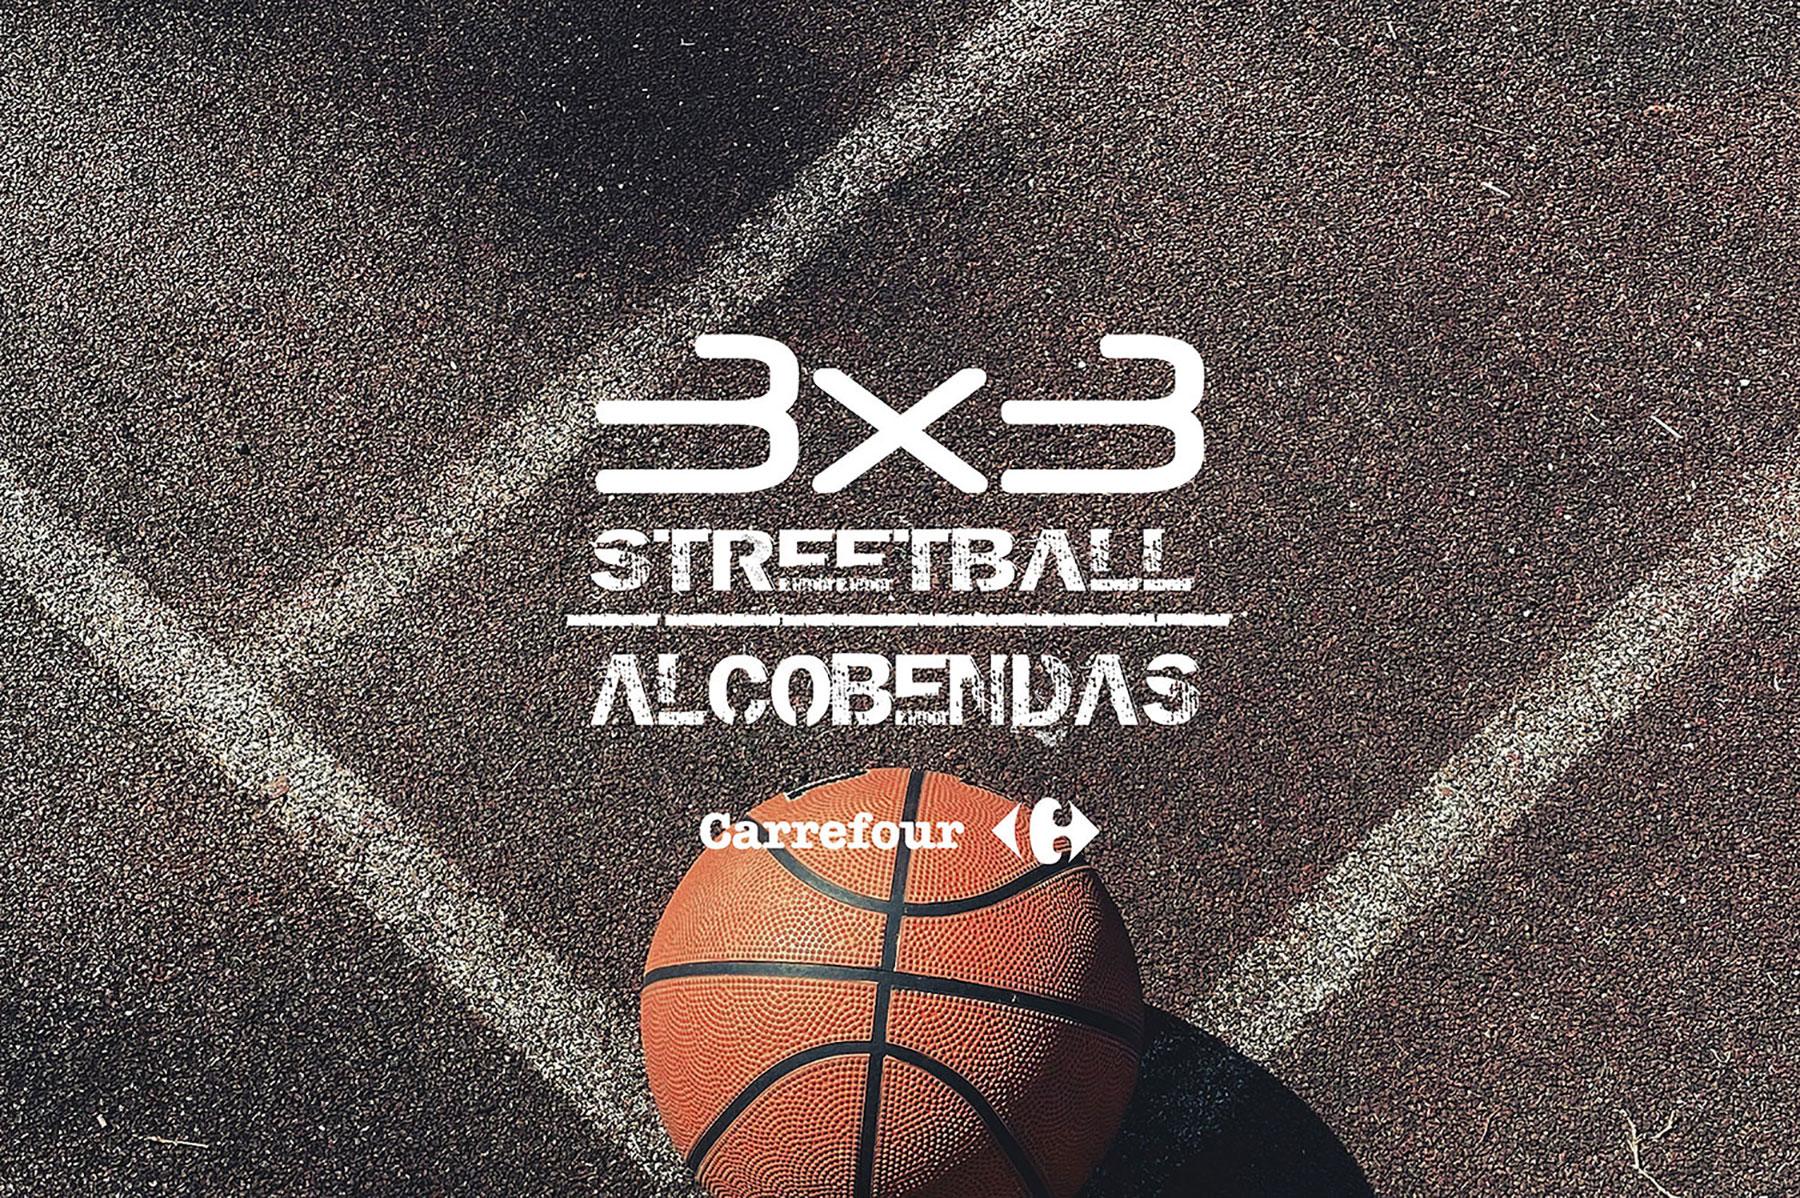 Logotipo del torneo 3x3 Streetball